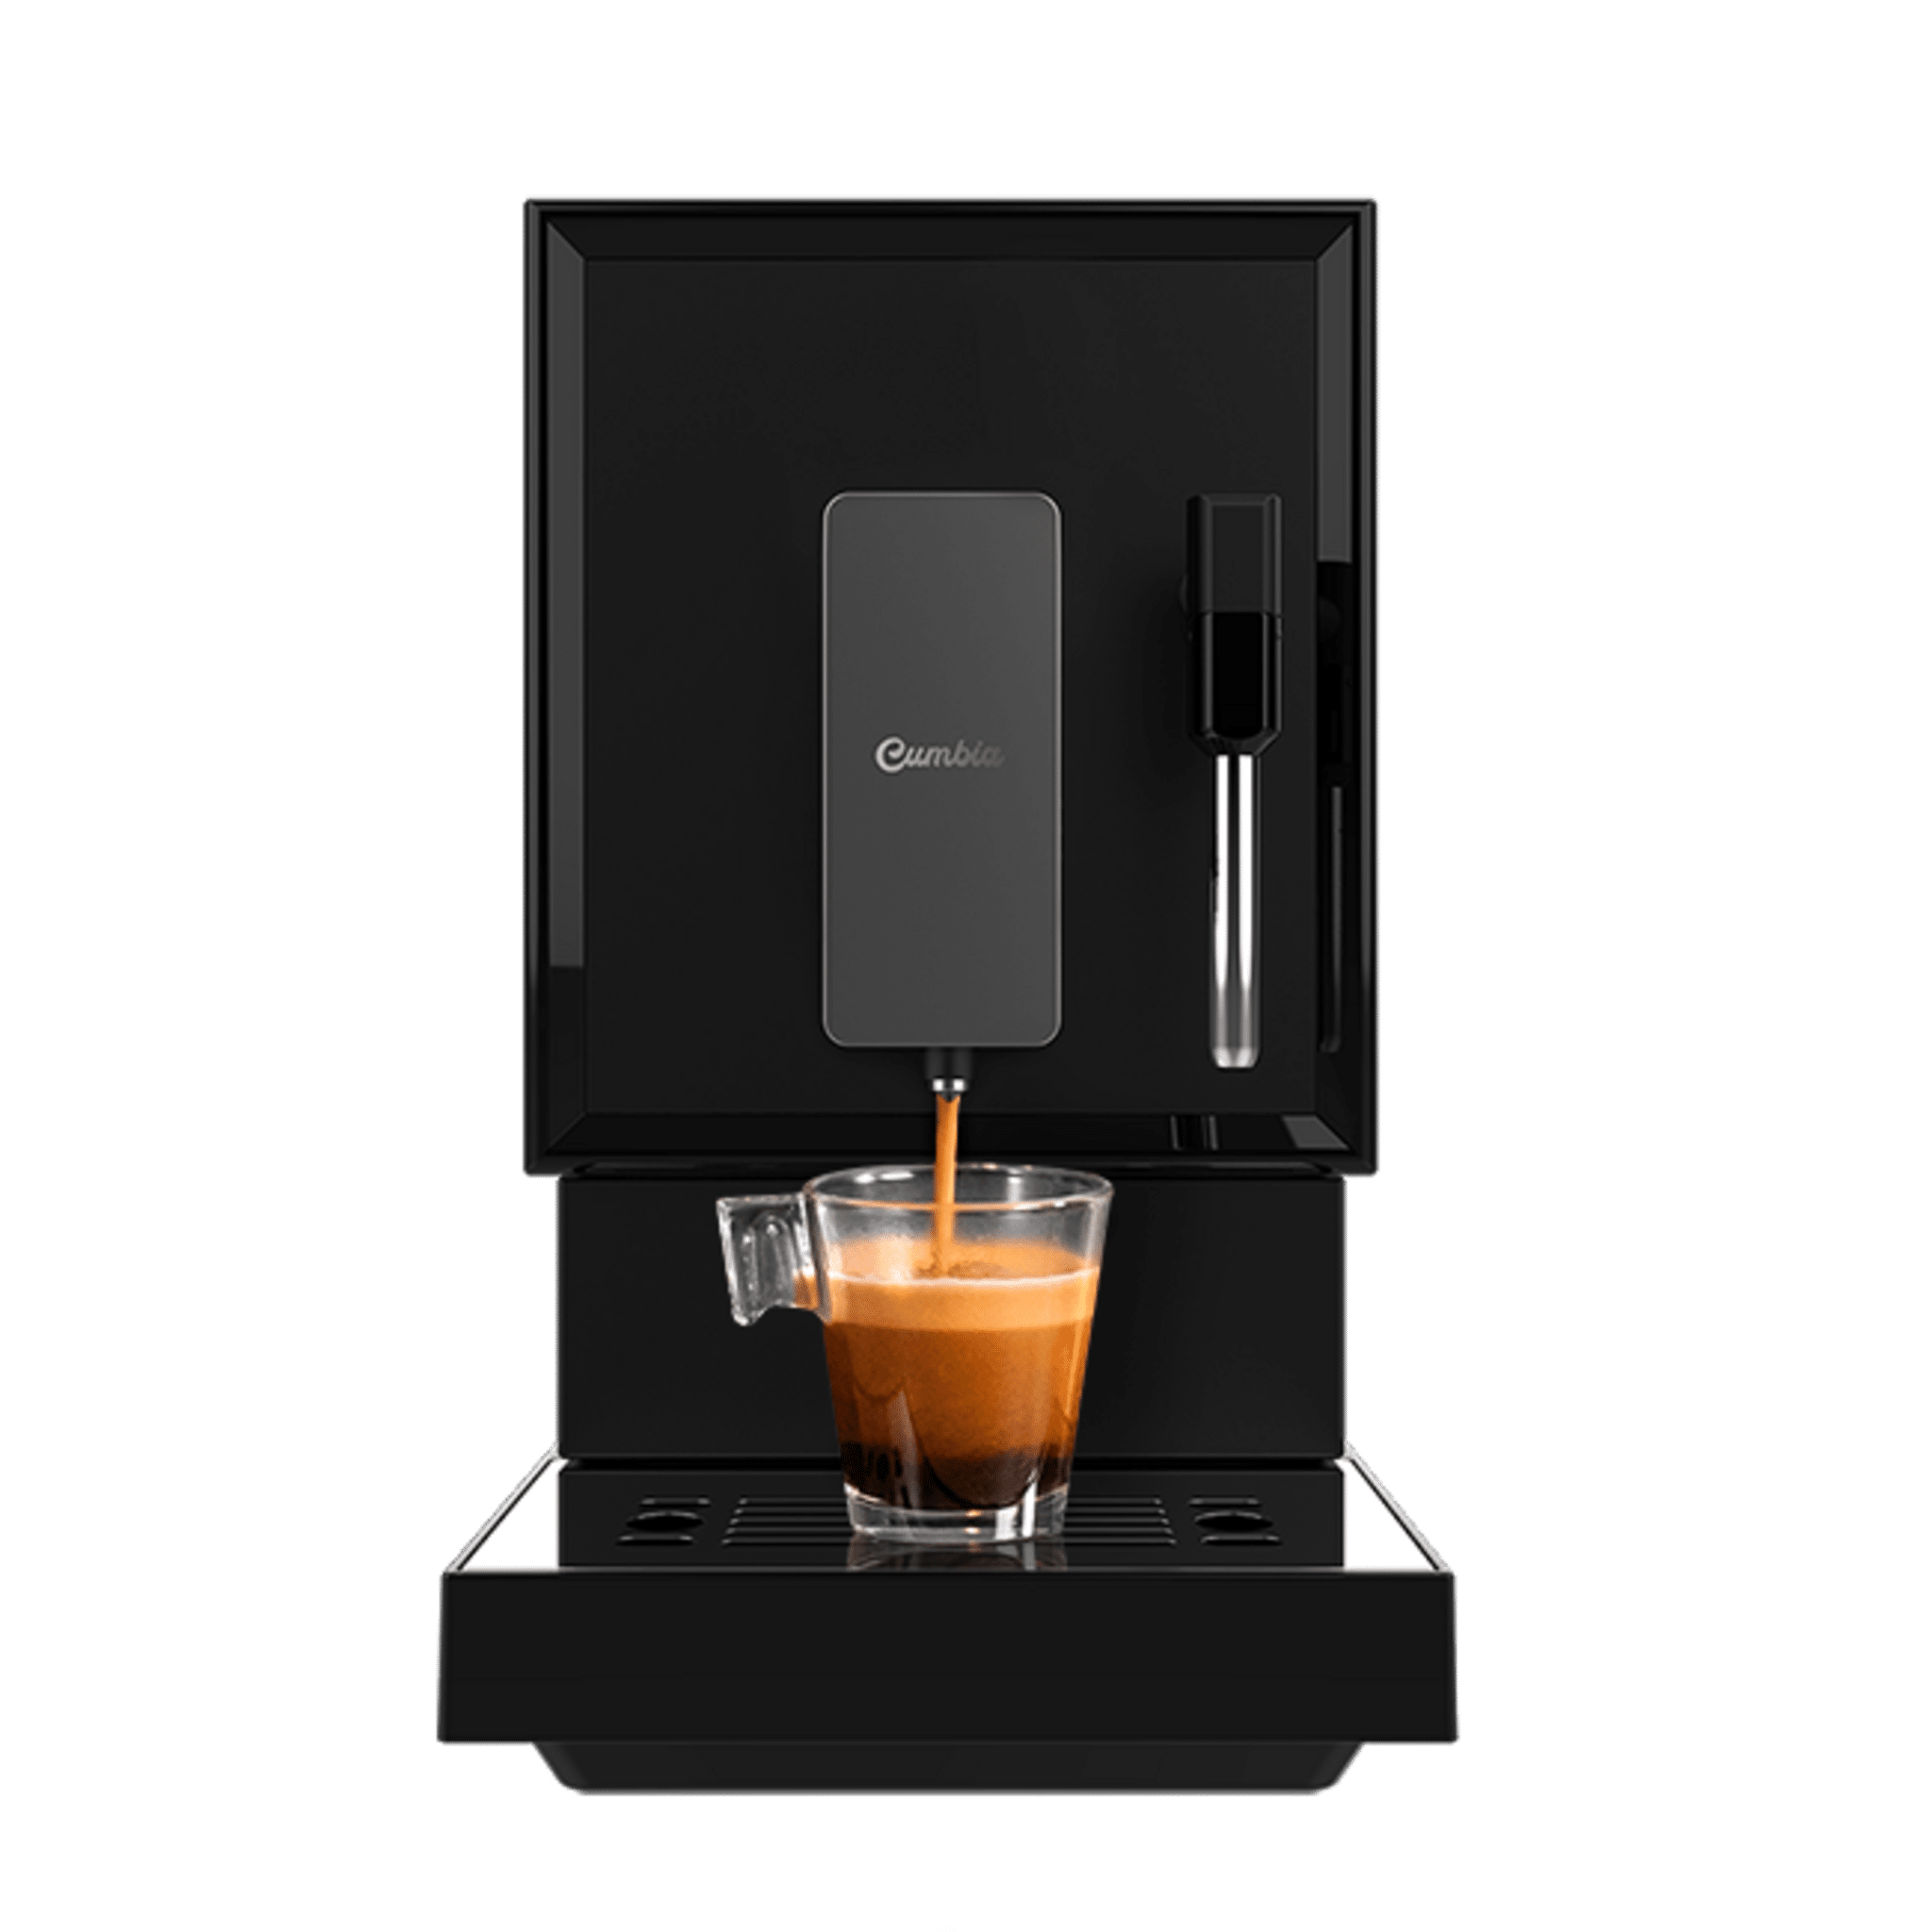 Cafetera megautomática Power Matic-ccino Vaporissima M para los amantes del café recién molido. Dispone de un sistema de rápido calentamiento por thermoblock, con 19 bares y vaporizador orientable.